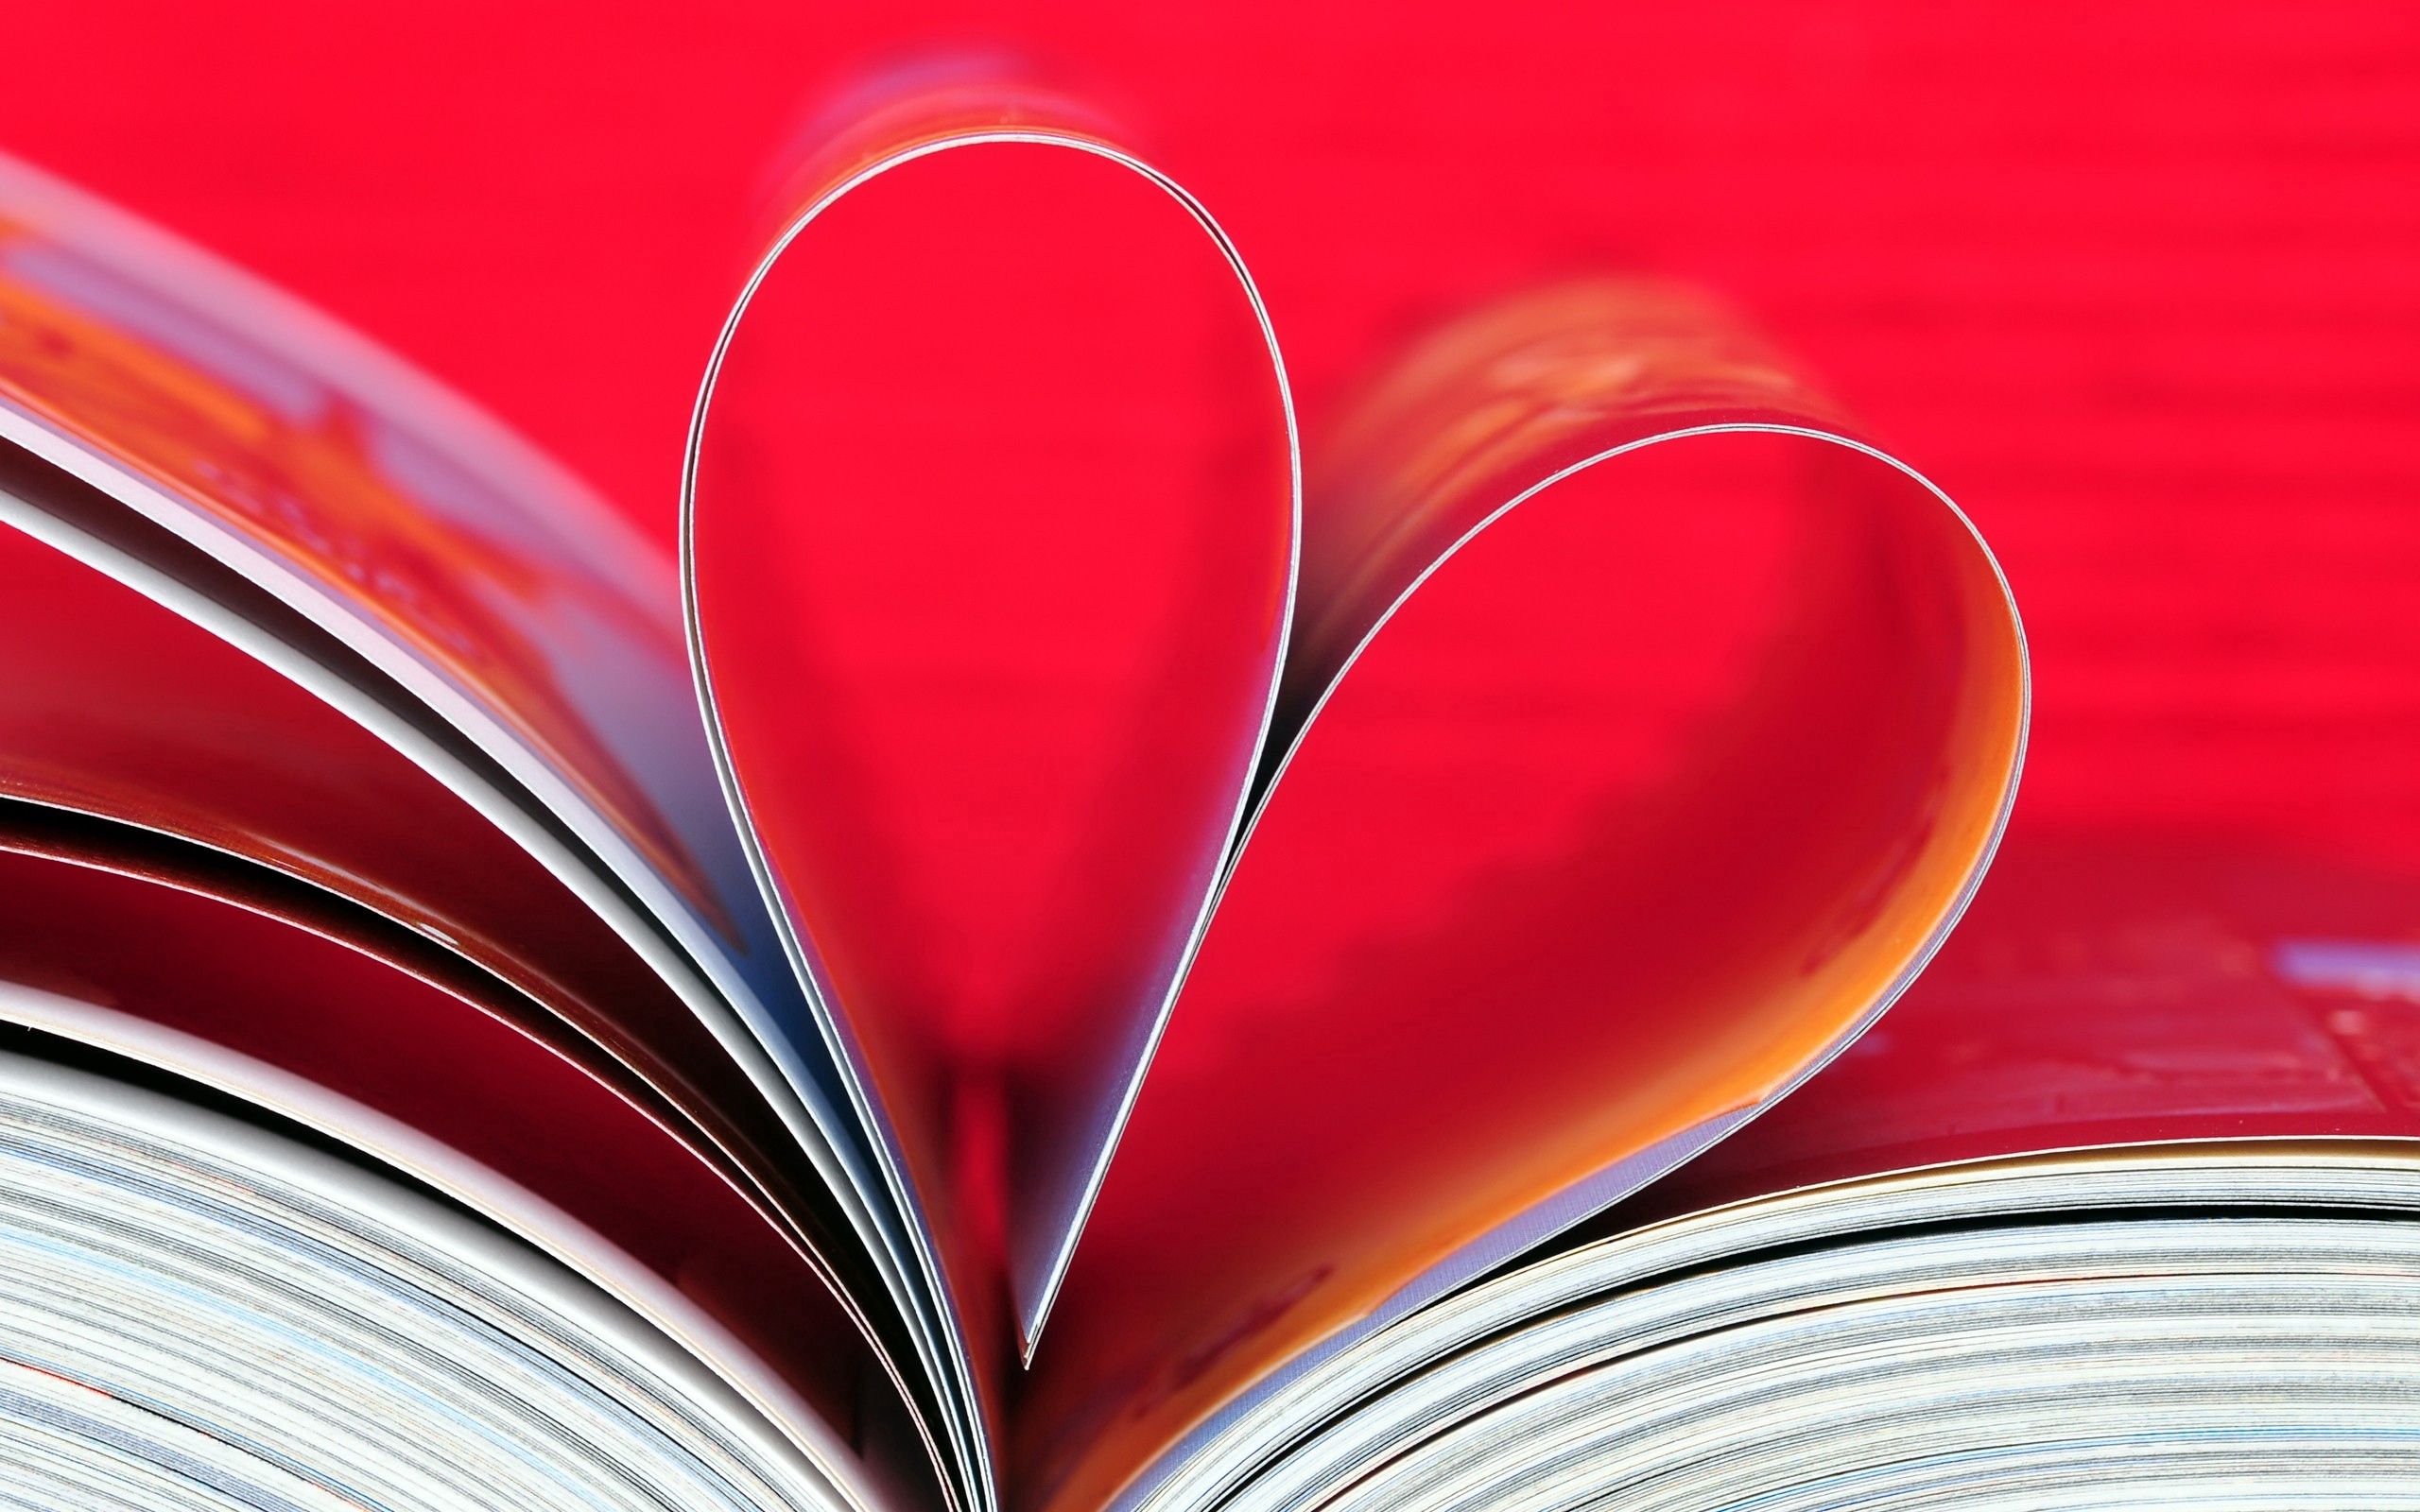 免费下载幻想, 叶, 一个心脏, 书, 预订, 爱, 心手机壁纸。